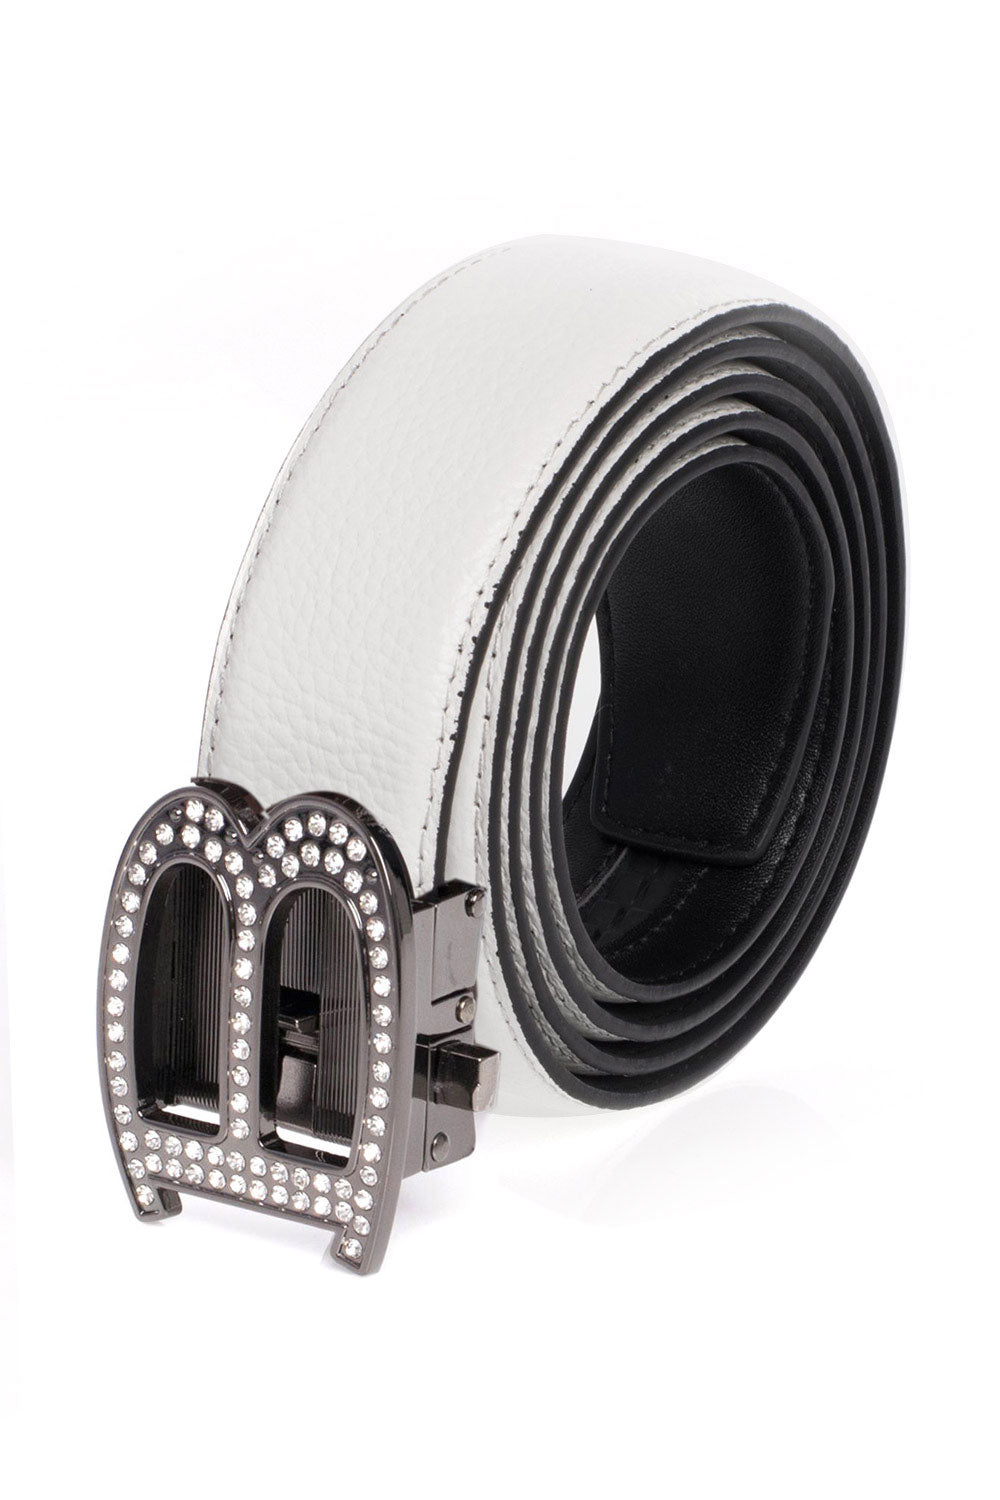 Barabas "B" Shiny Black/White Adjustable Luxury Leather Dress Belt - Dudes Boutique